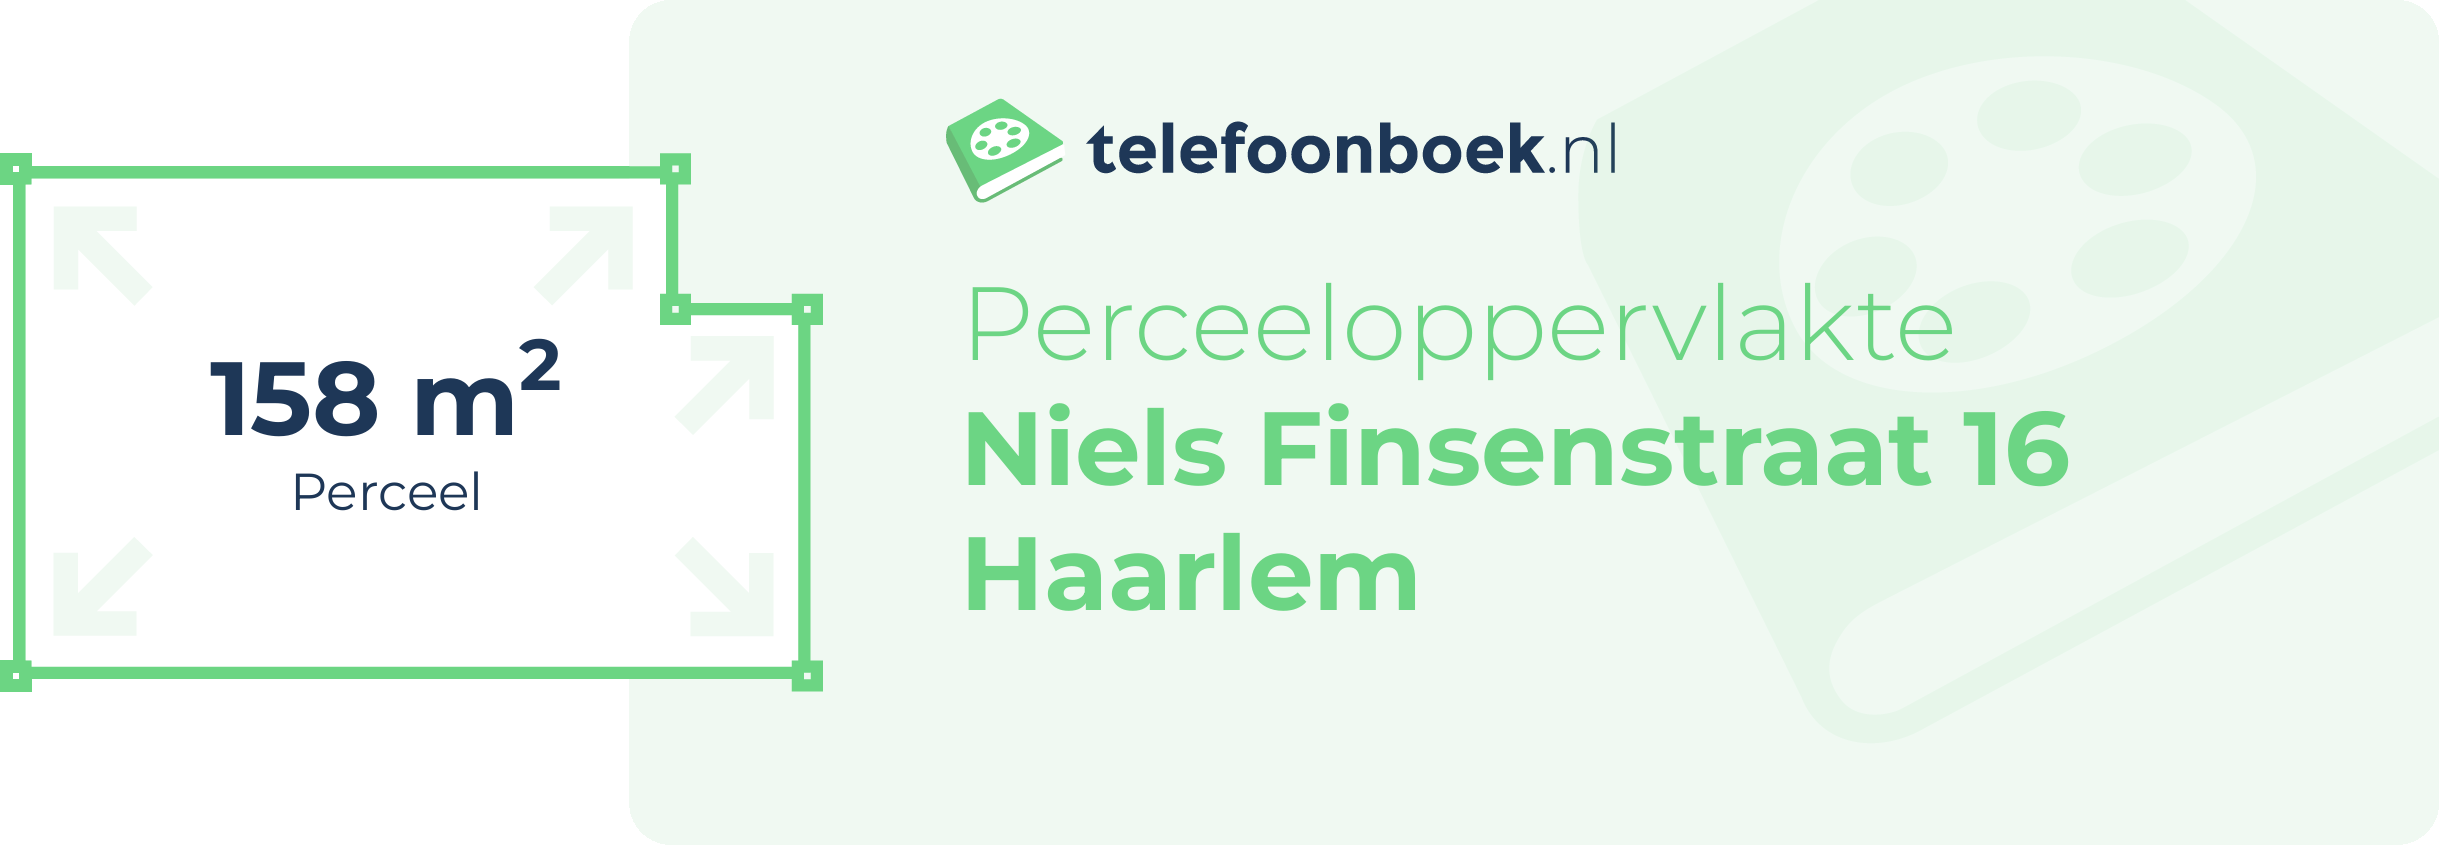 Perceeloppervlakte Niels Finsenstraat 16 Haarlem